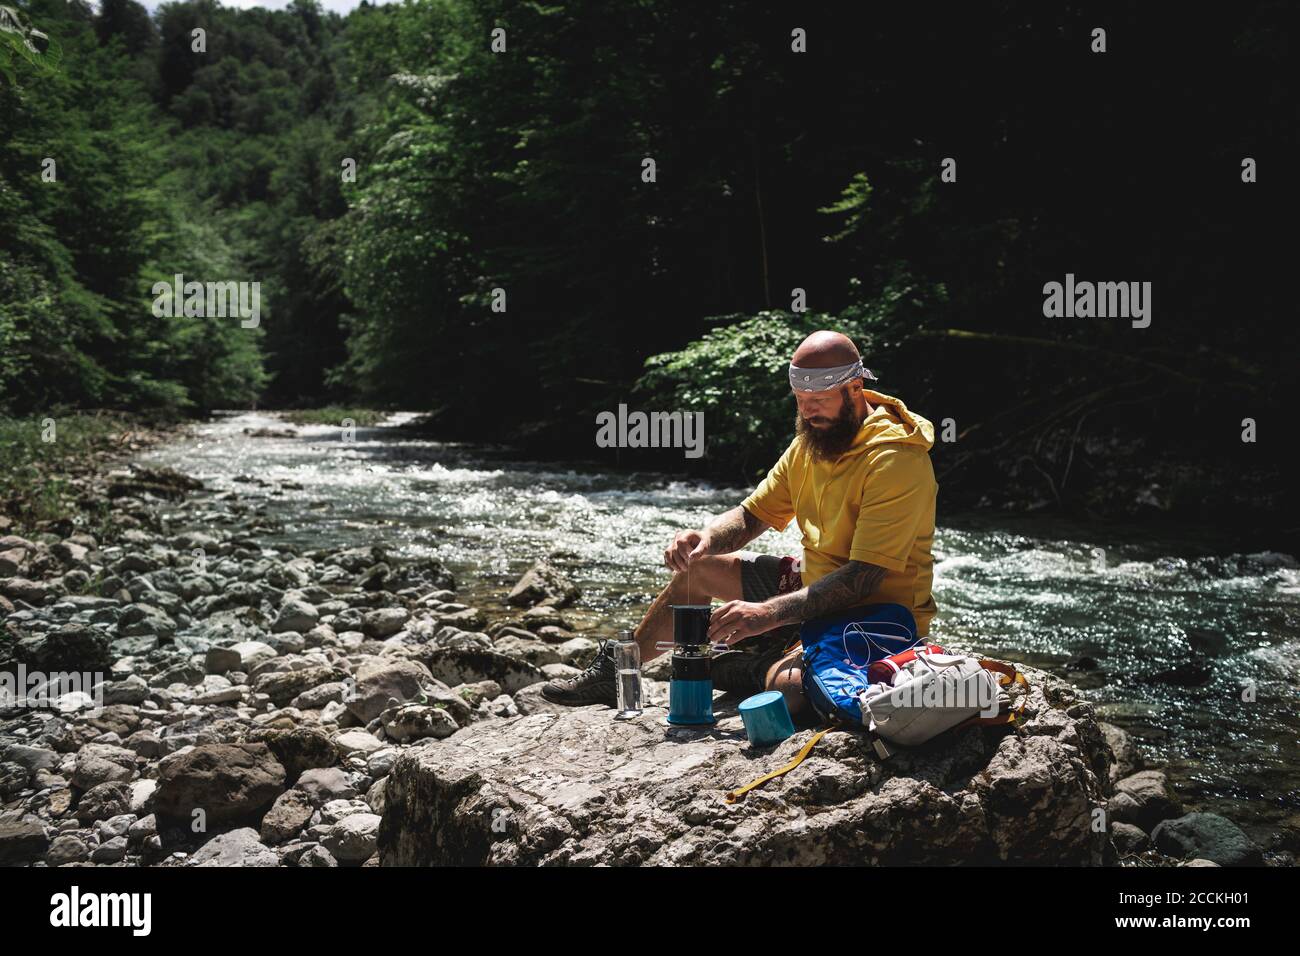 Randonneur avec une barbe complète et un sweat à capuche jaune pendant la pause, cuisant du thé au bord de la rivière Banque D'Images